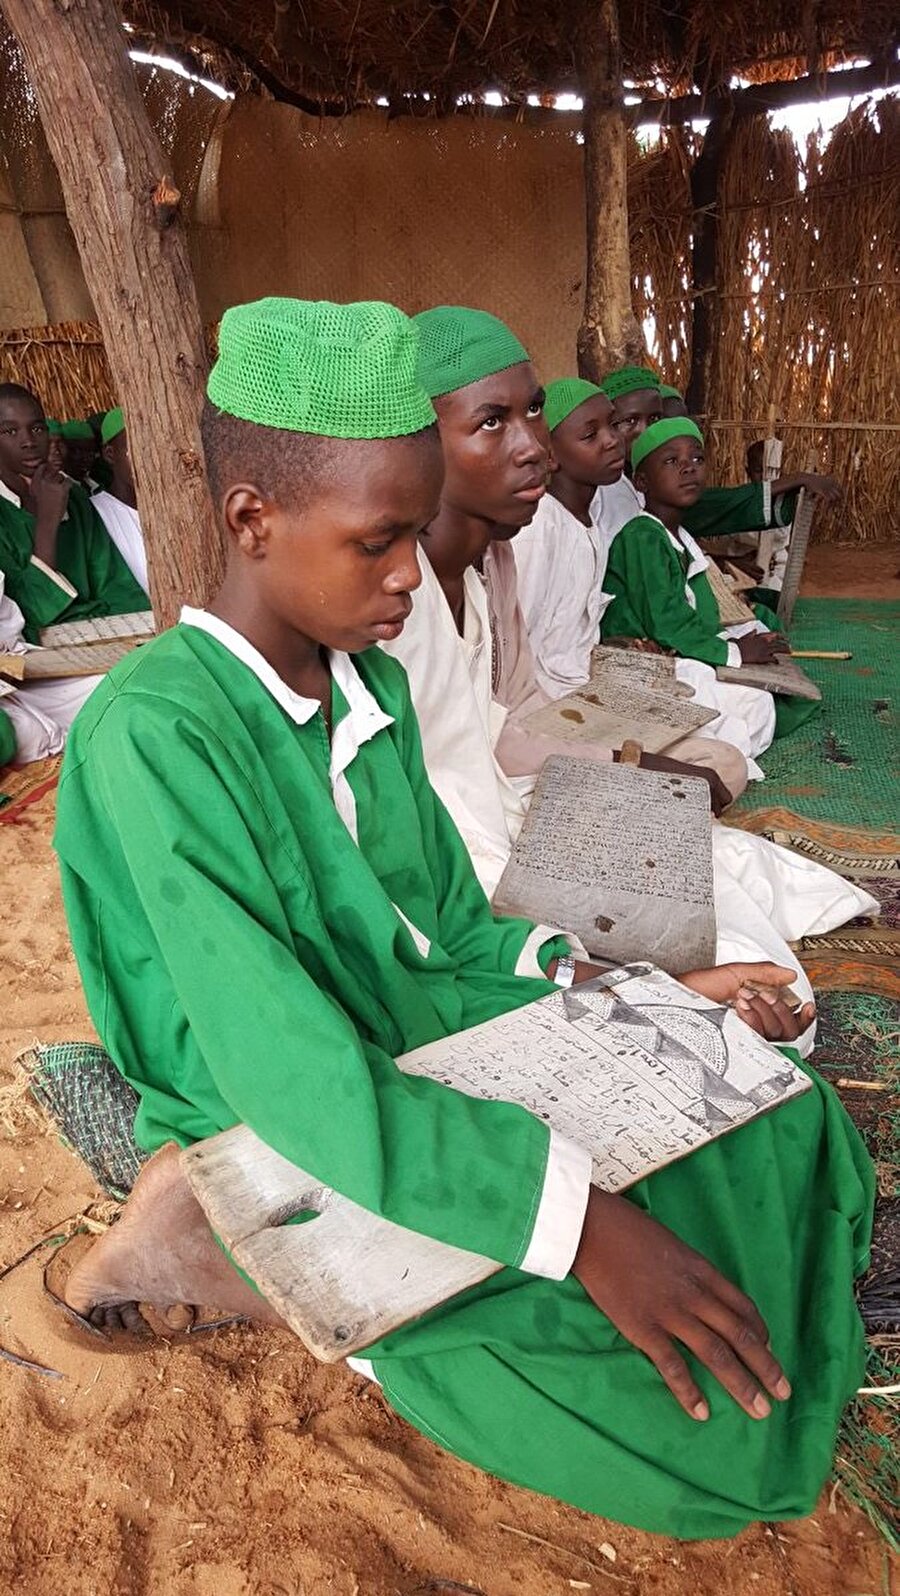 Sudan'ın Darfur bölgesindeki bir medresede öğrenciler tahta levhalarıyla eğitim görüyor.